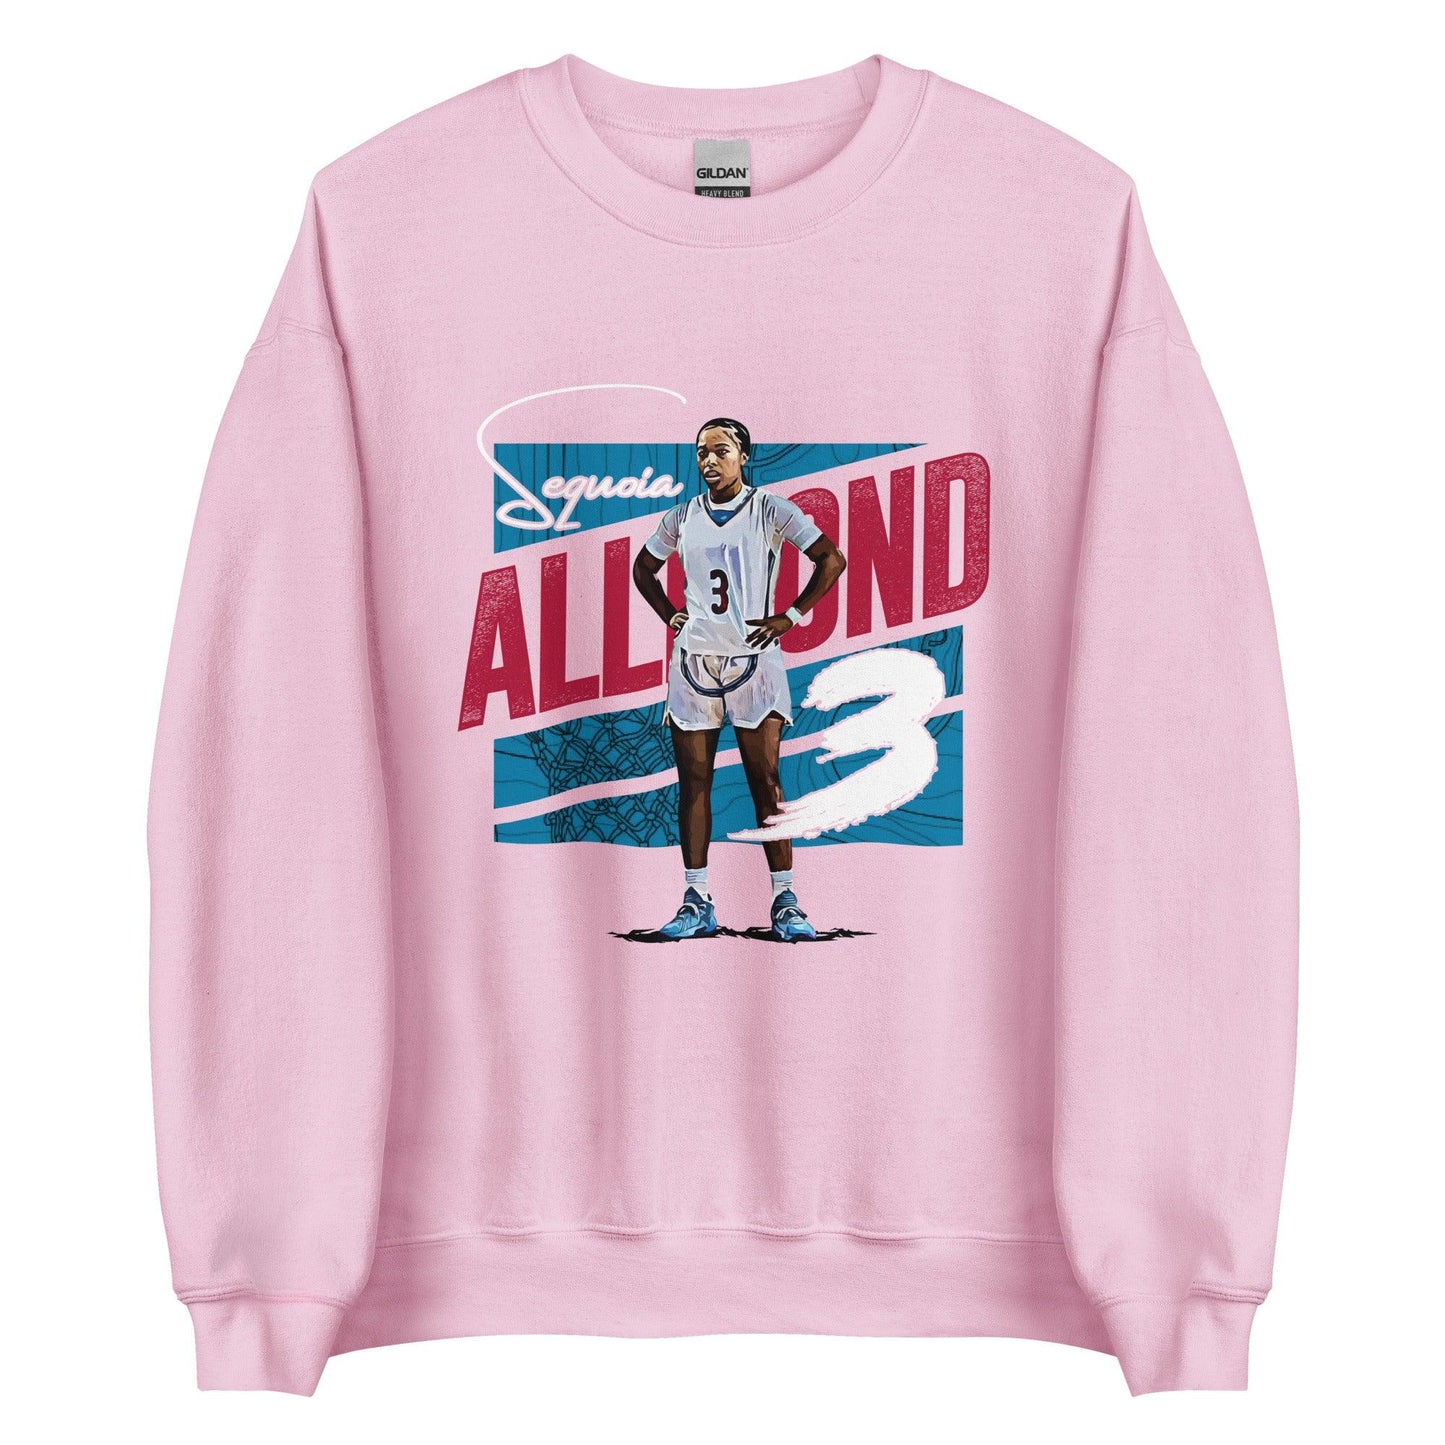 SeQuoia Allmond "Gametime" Sweatshirt - Fan Arch